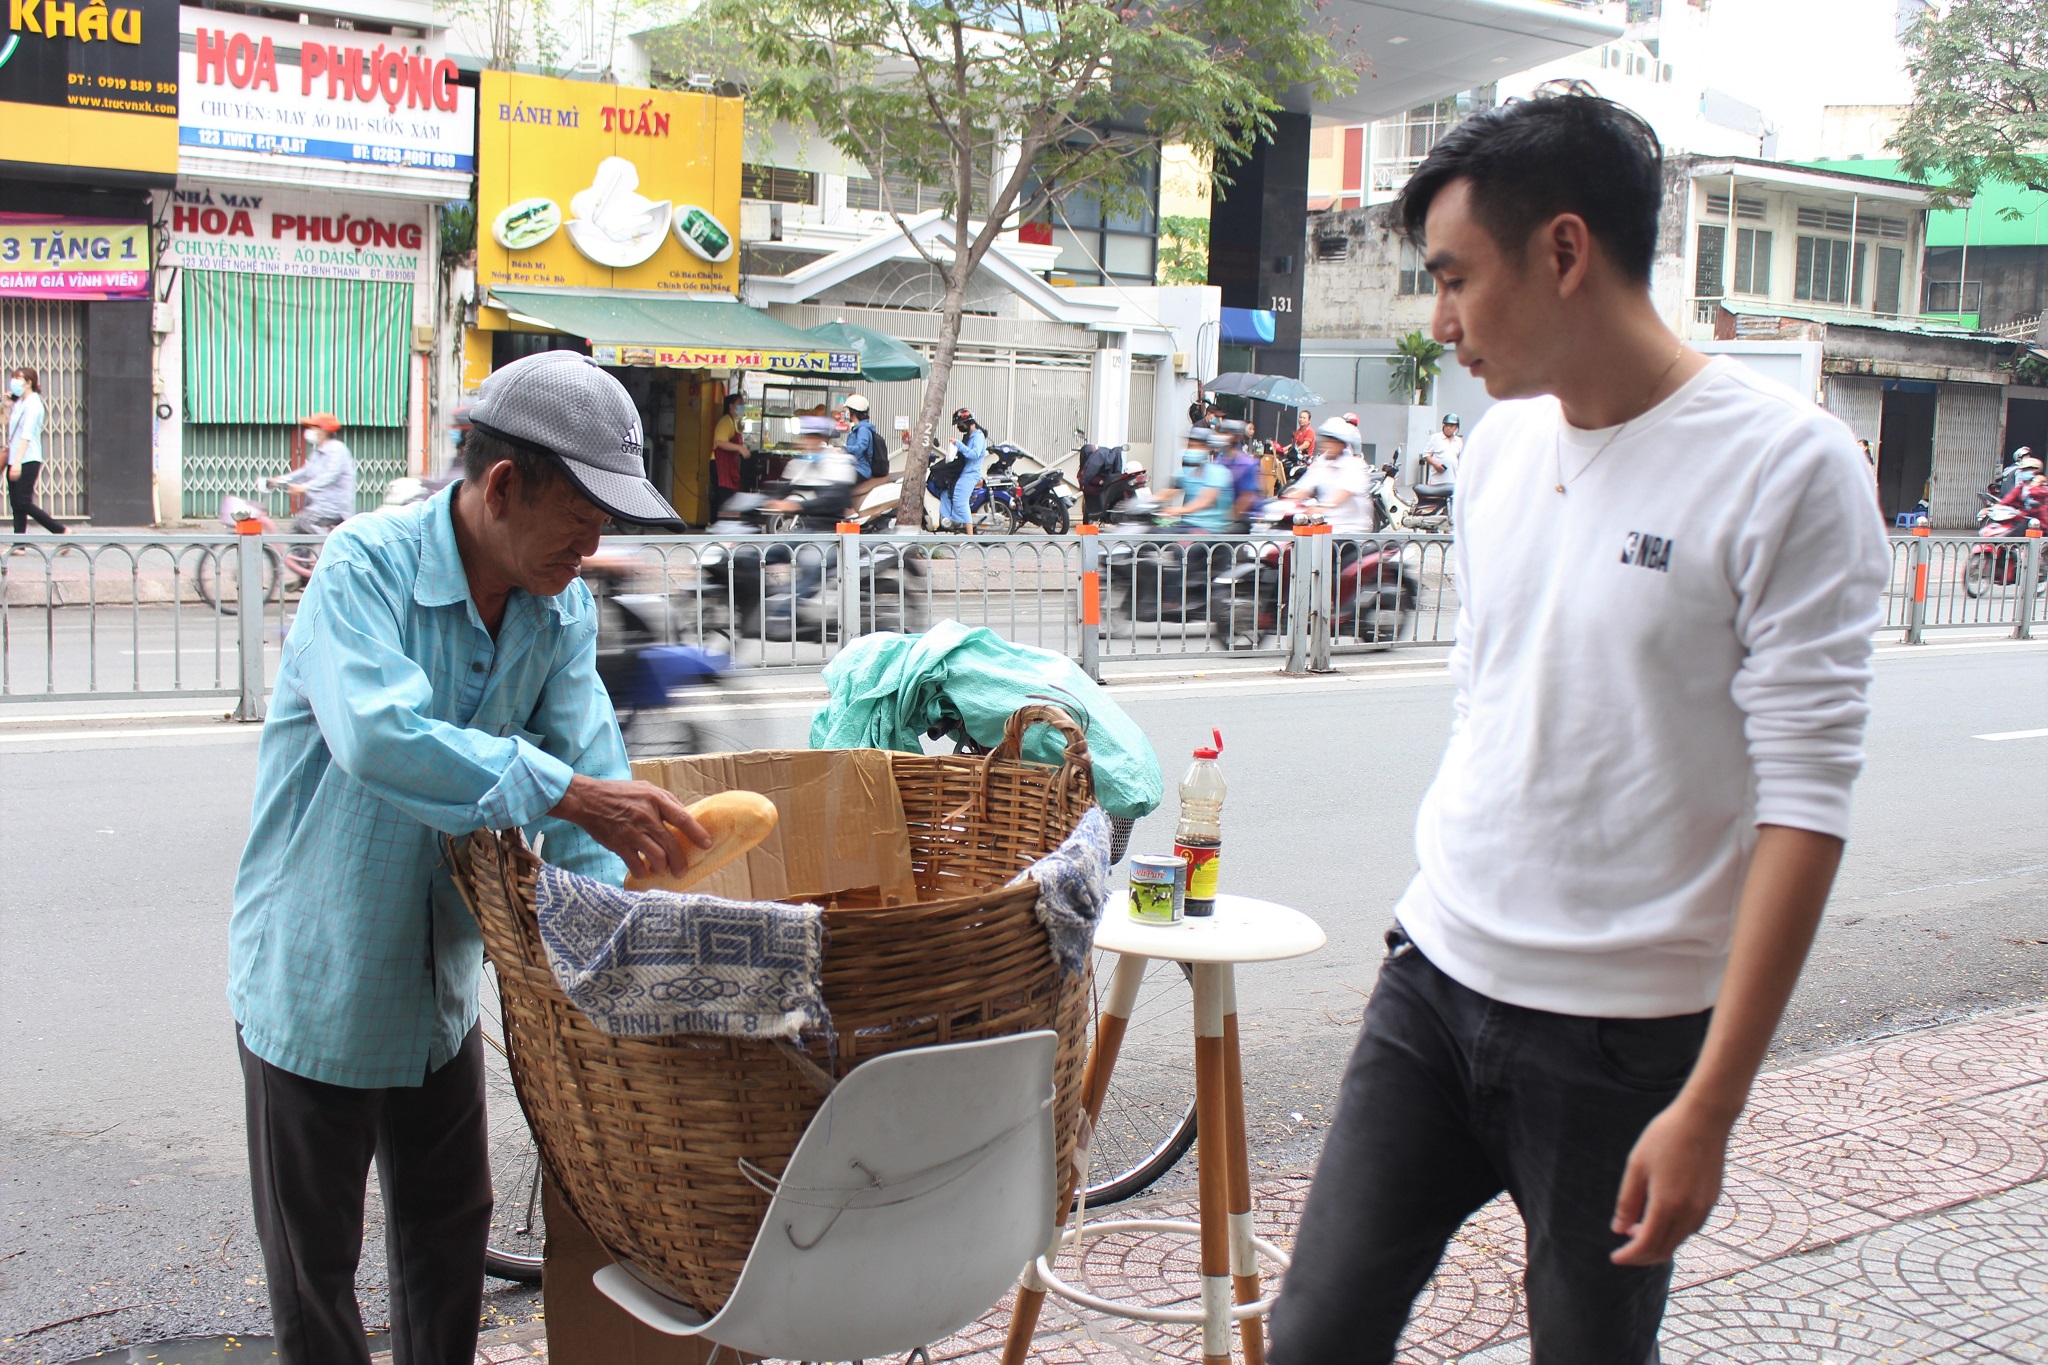 Chủ sọt bánh mì miễn phí quận Bình Thạnh: “Làm từ thiện có dễ”?